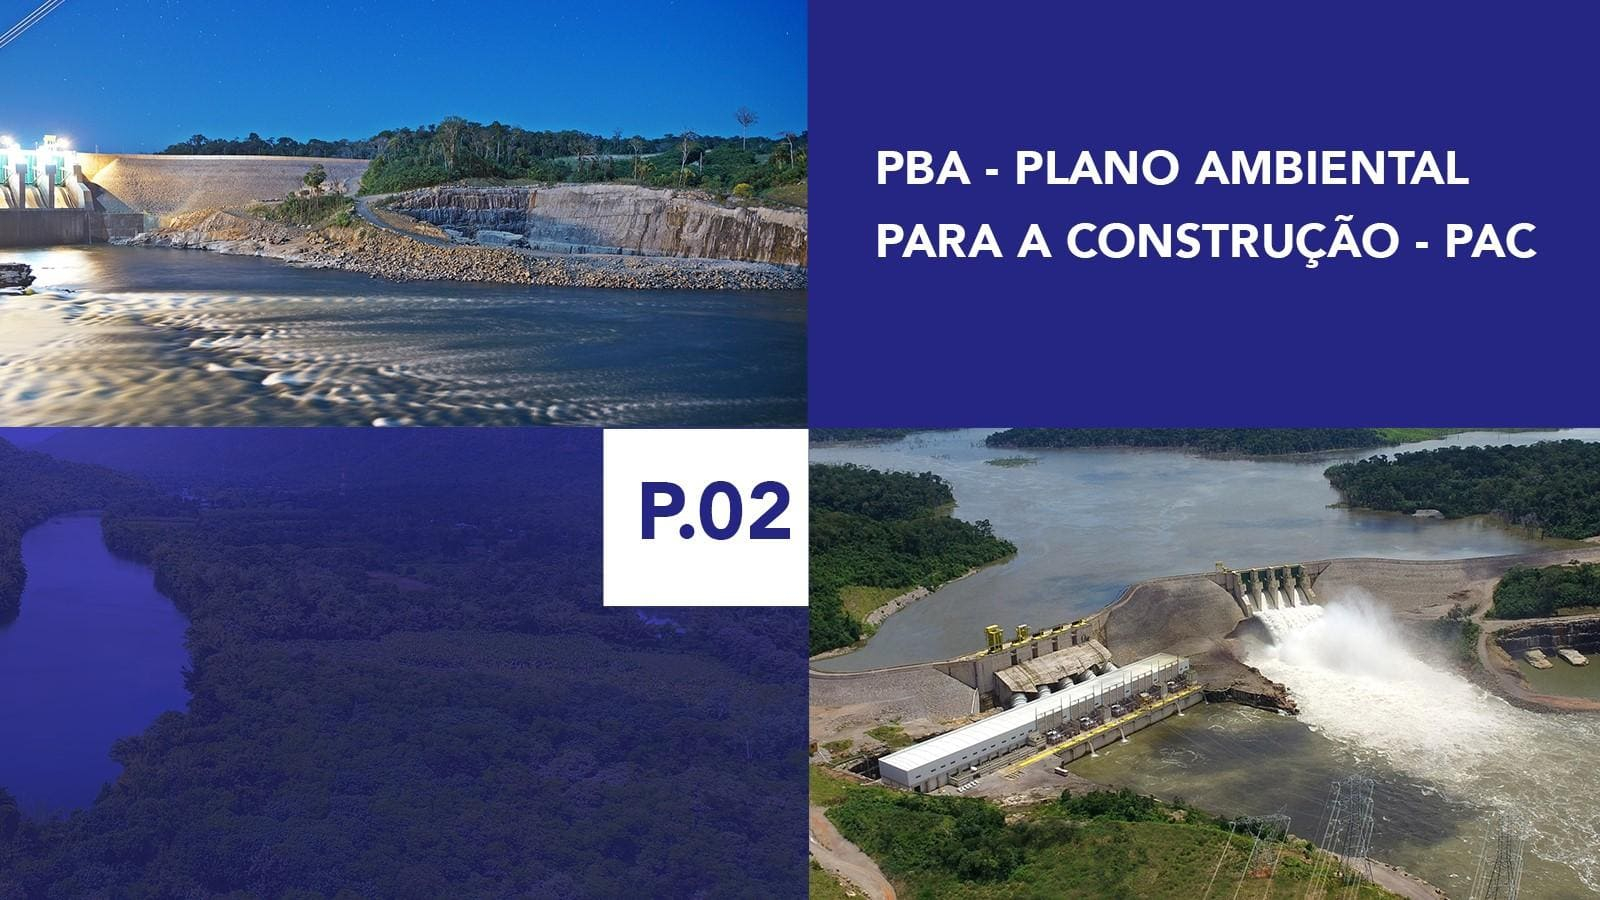 P.02 - Plano Ambiental para a Construção - PAC